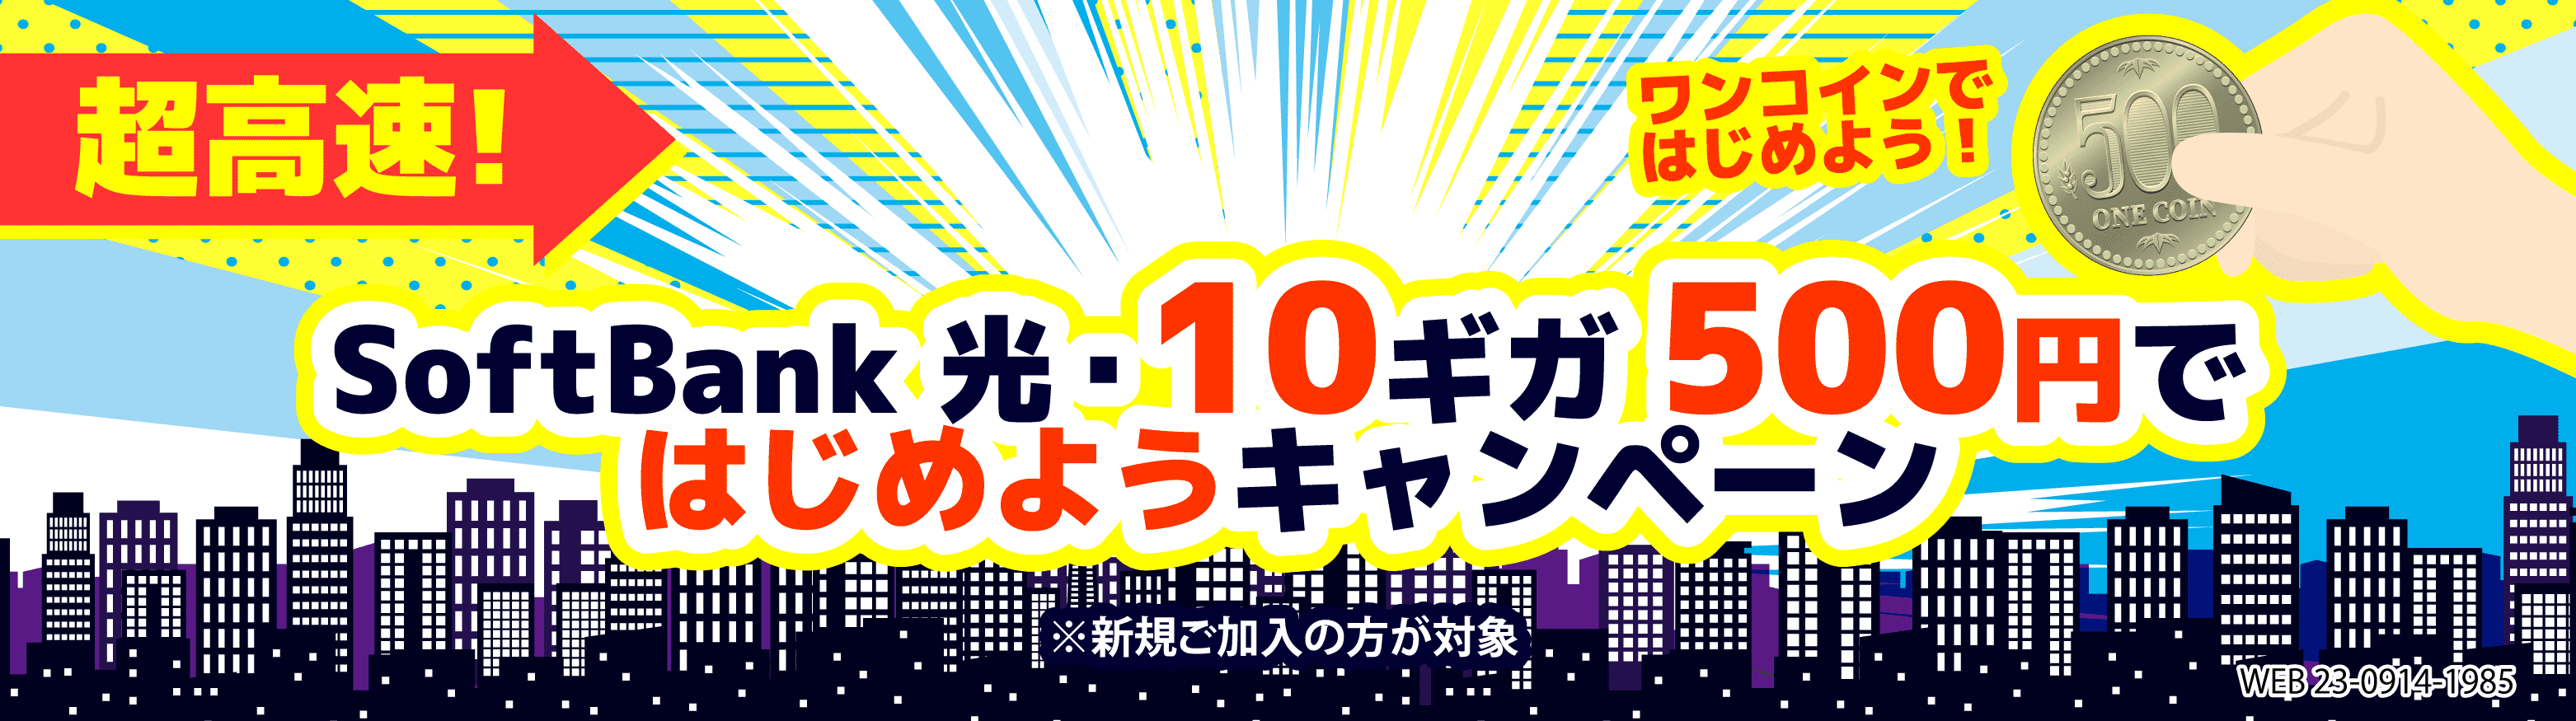 SoftBank光・10ギガ500円ではじめようキャンペーン